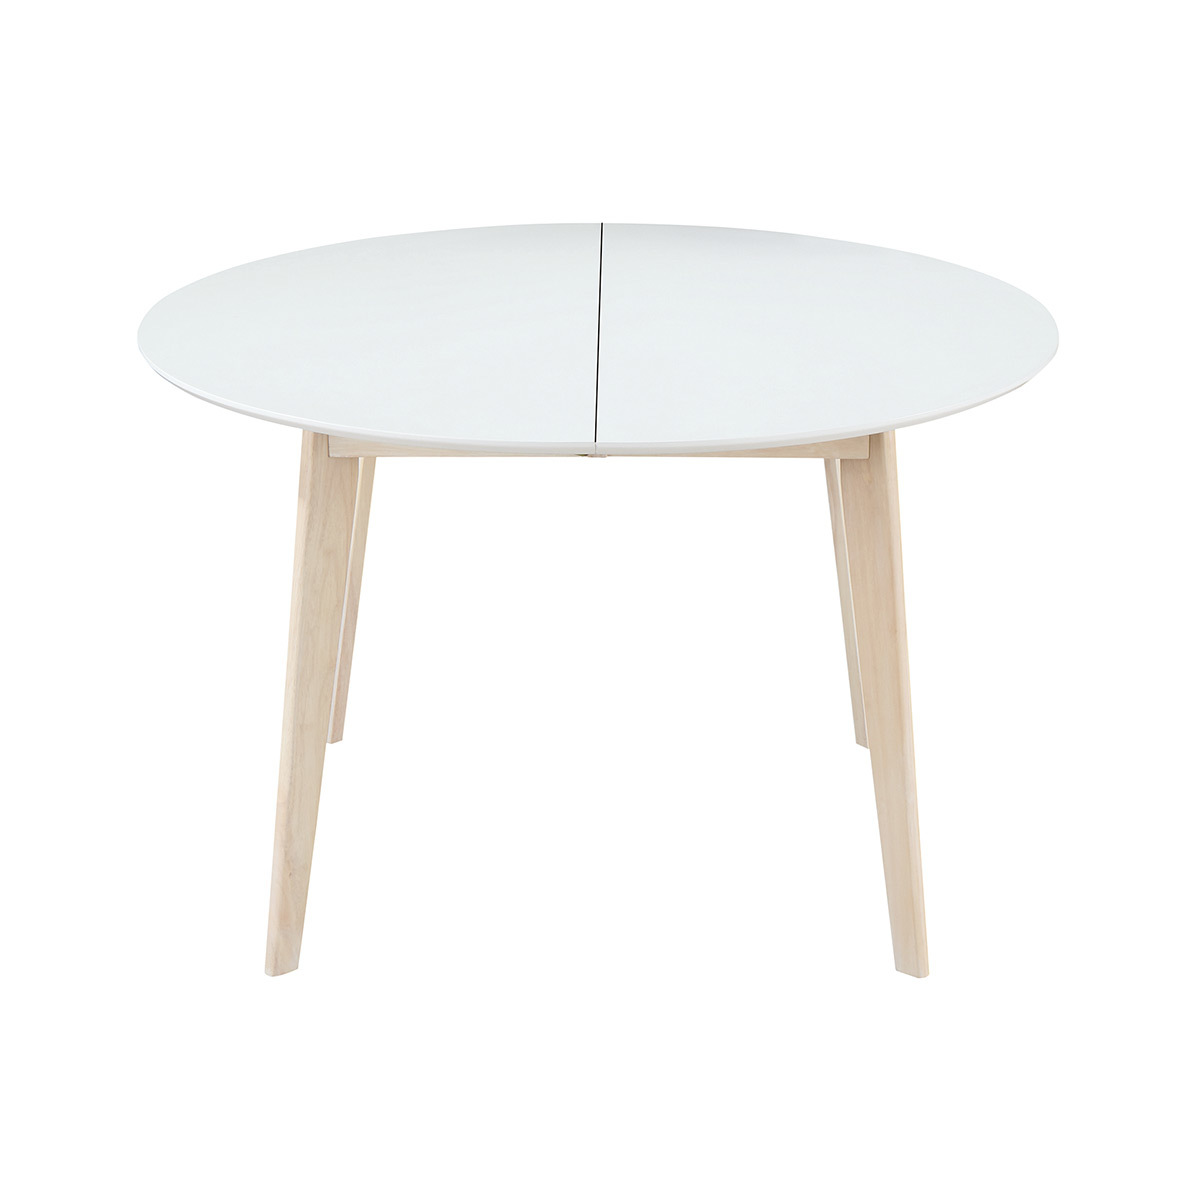 Tavolo da pranzo design rotondo allungabile bianco e legno L120-150 LEENA